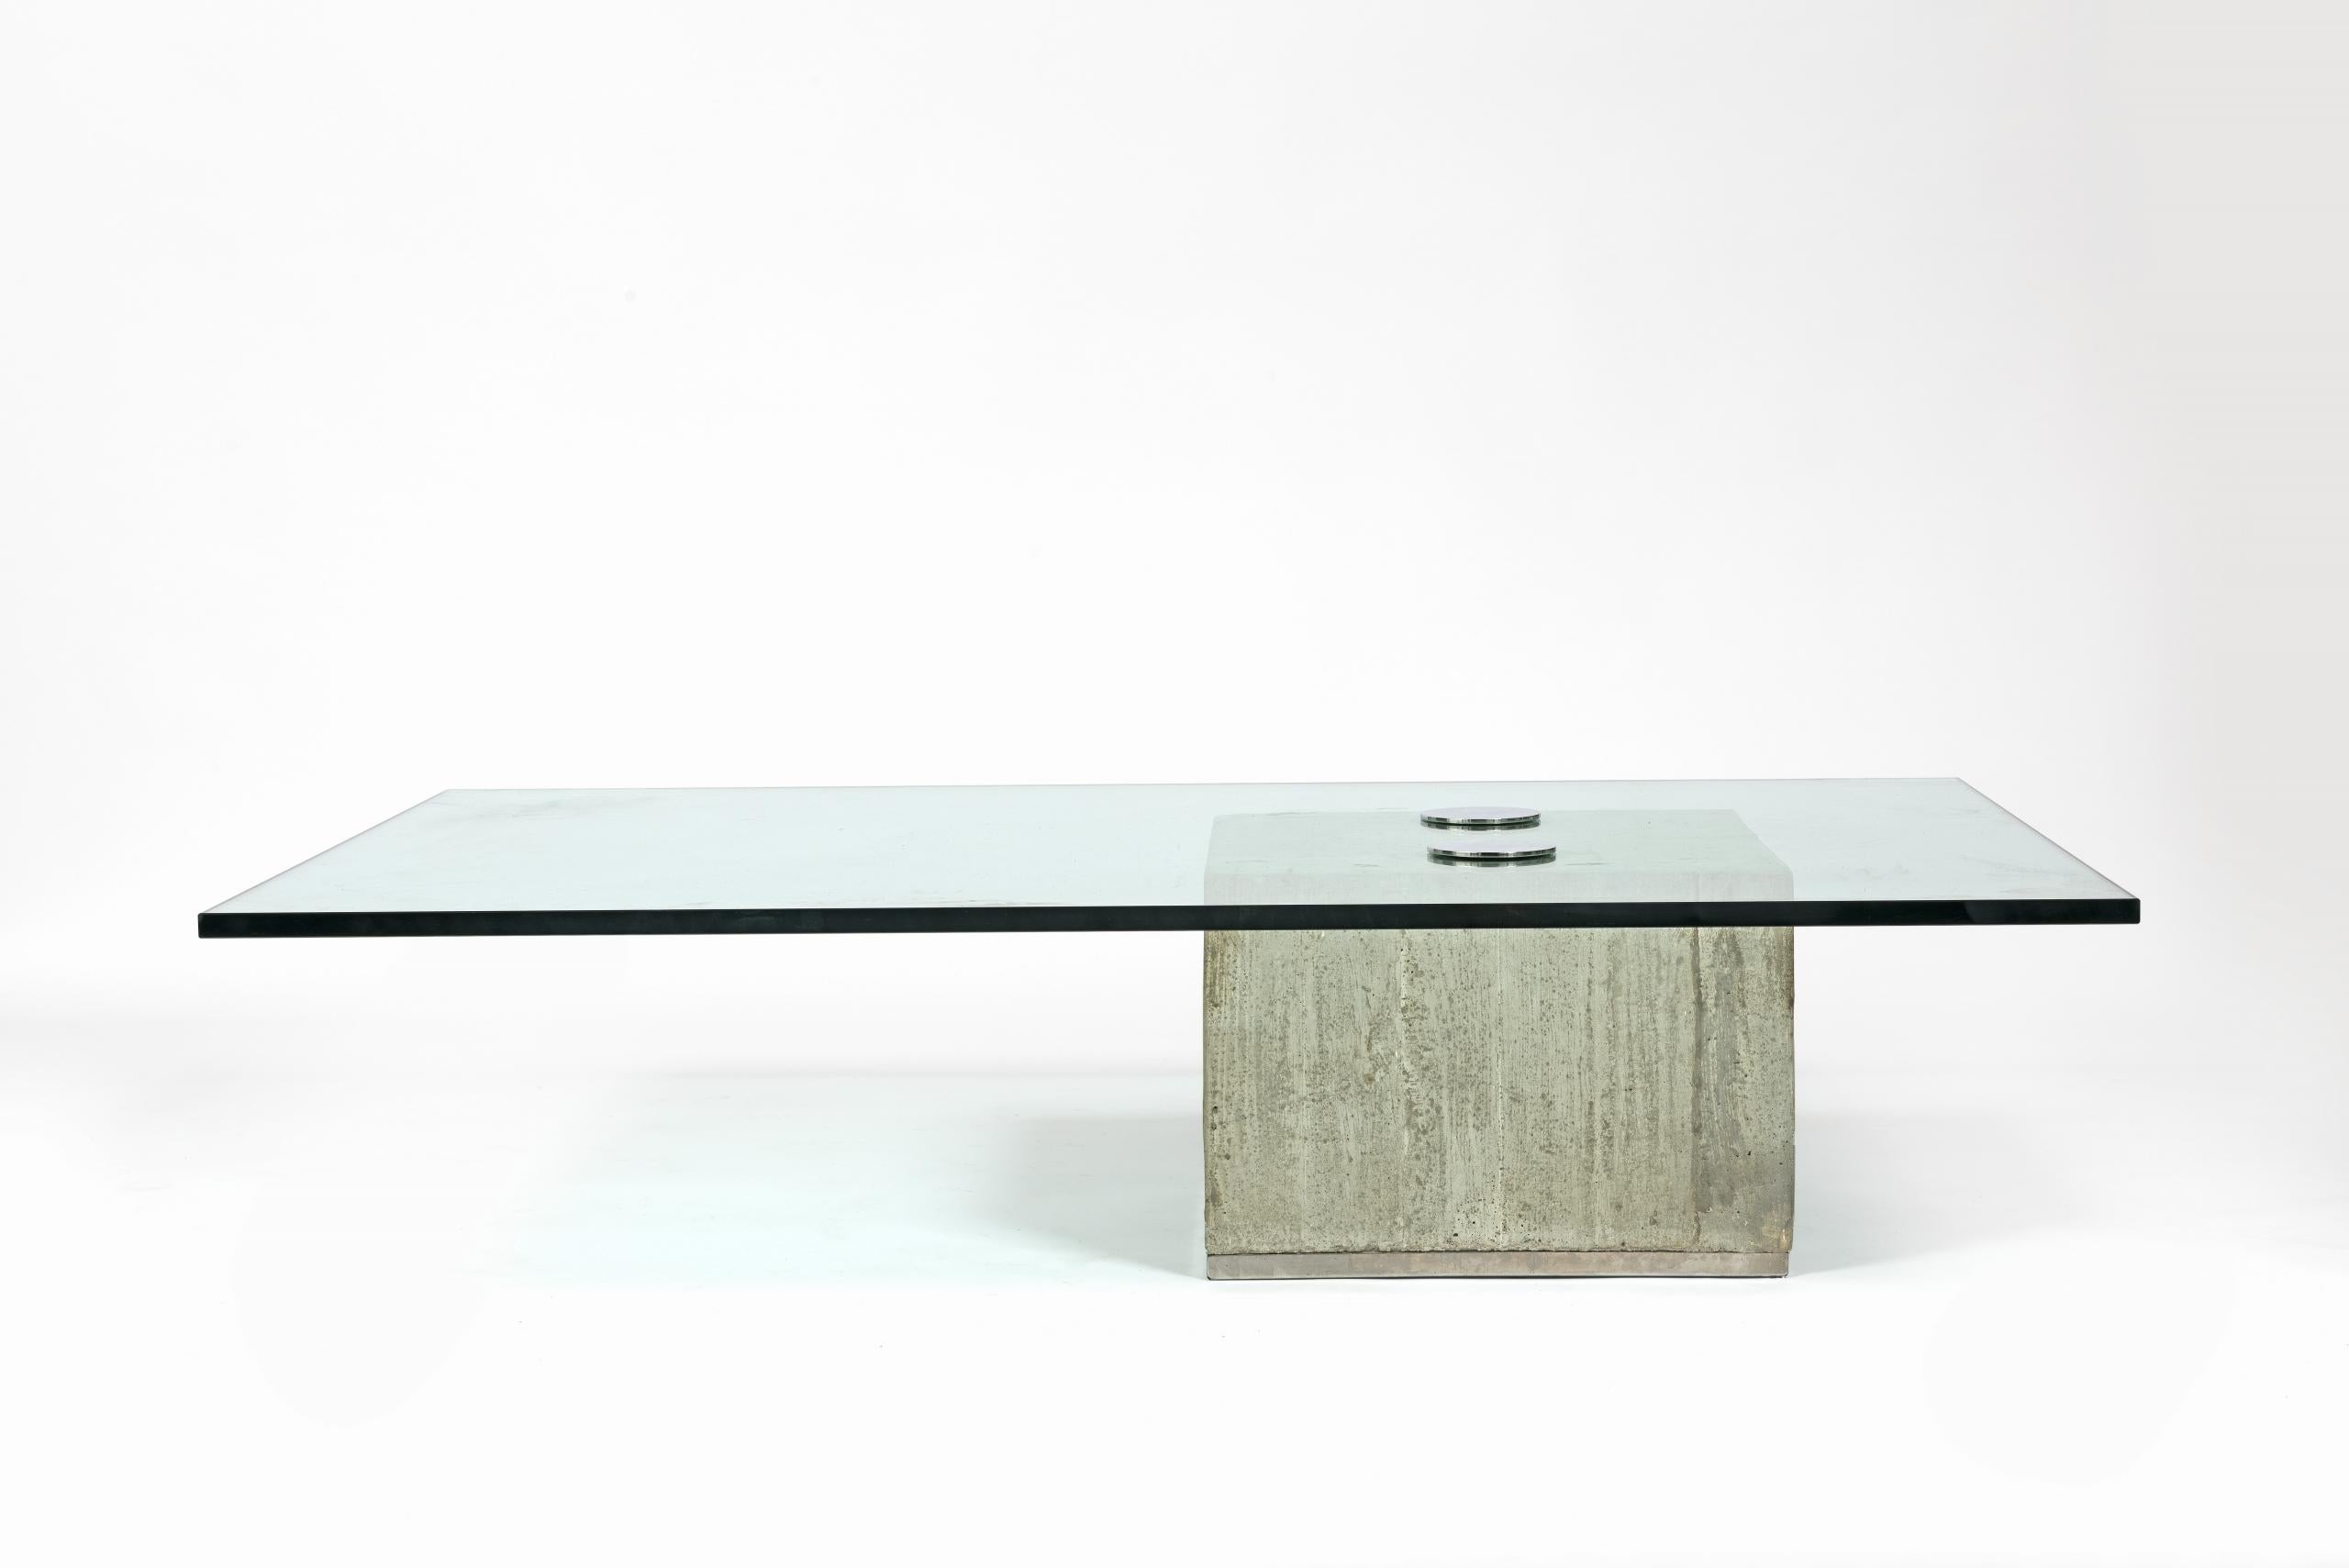 Élégante table basse minimaliste “Sapo” de Saporiti, Italie.

Le bloc de béton brut supporte un plateau en verre épais sécurisé par deux boutons chromés.